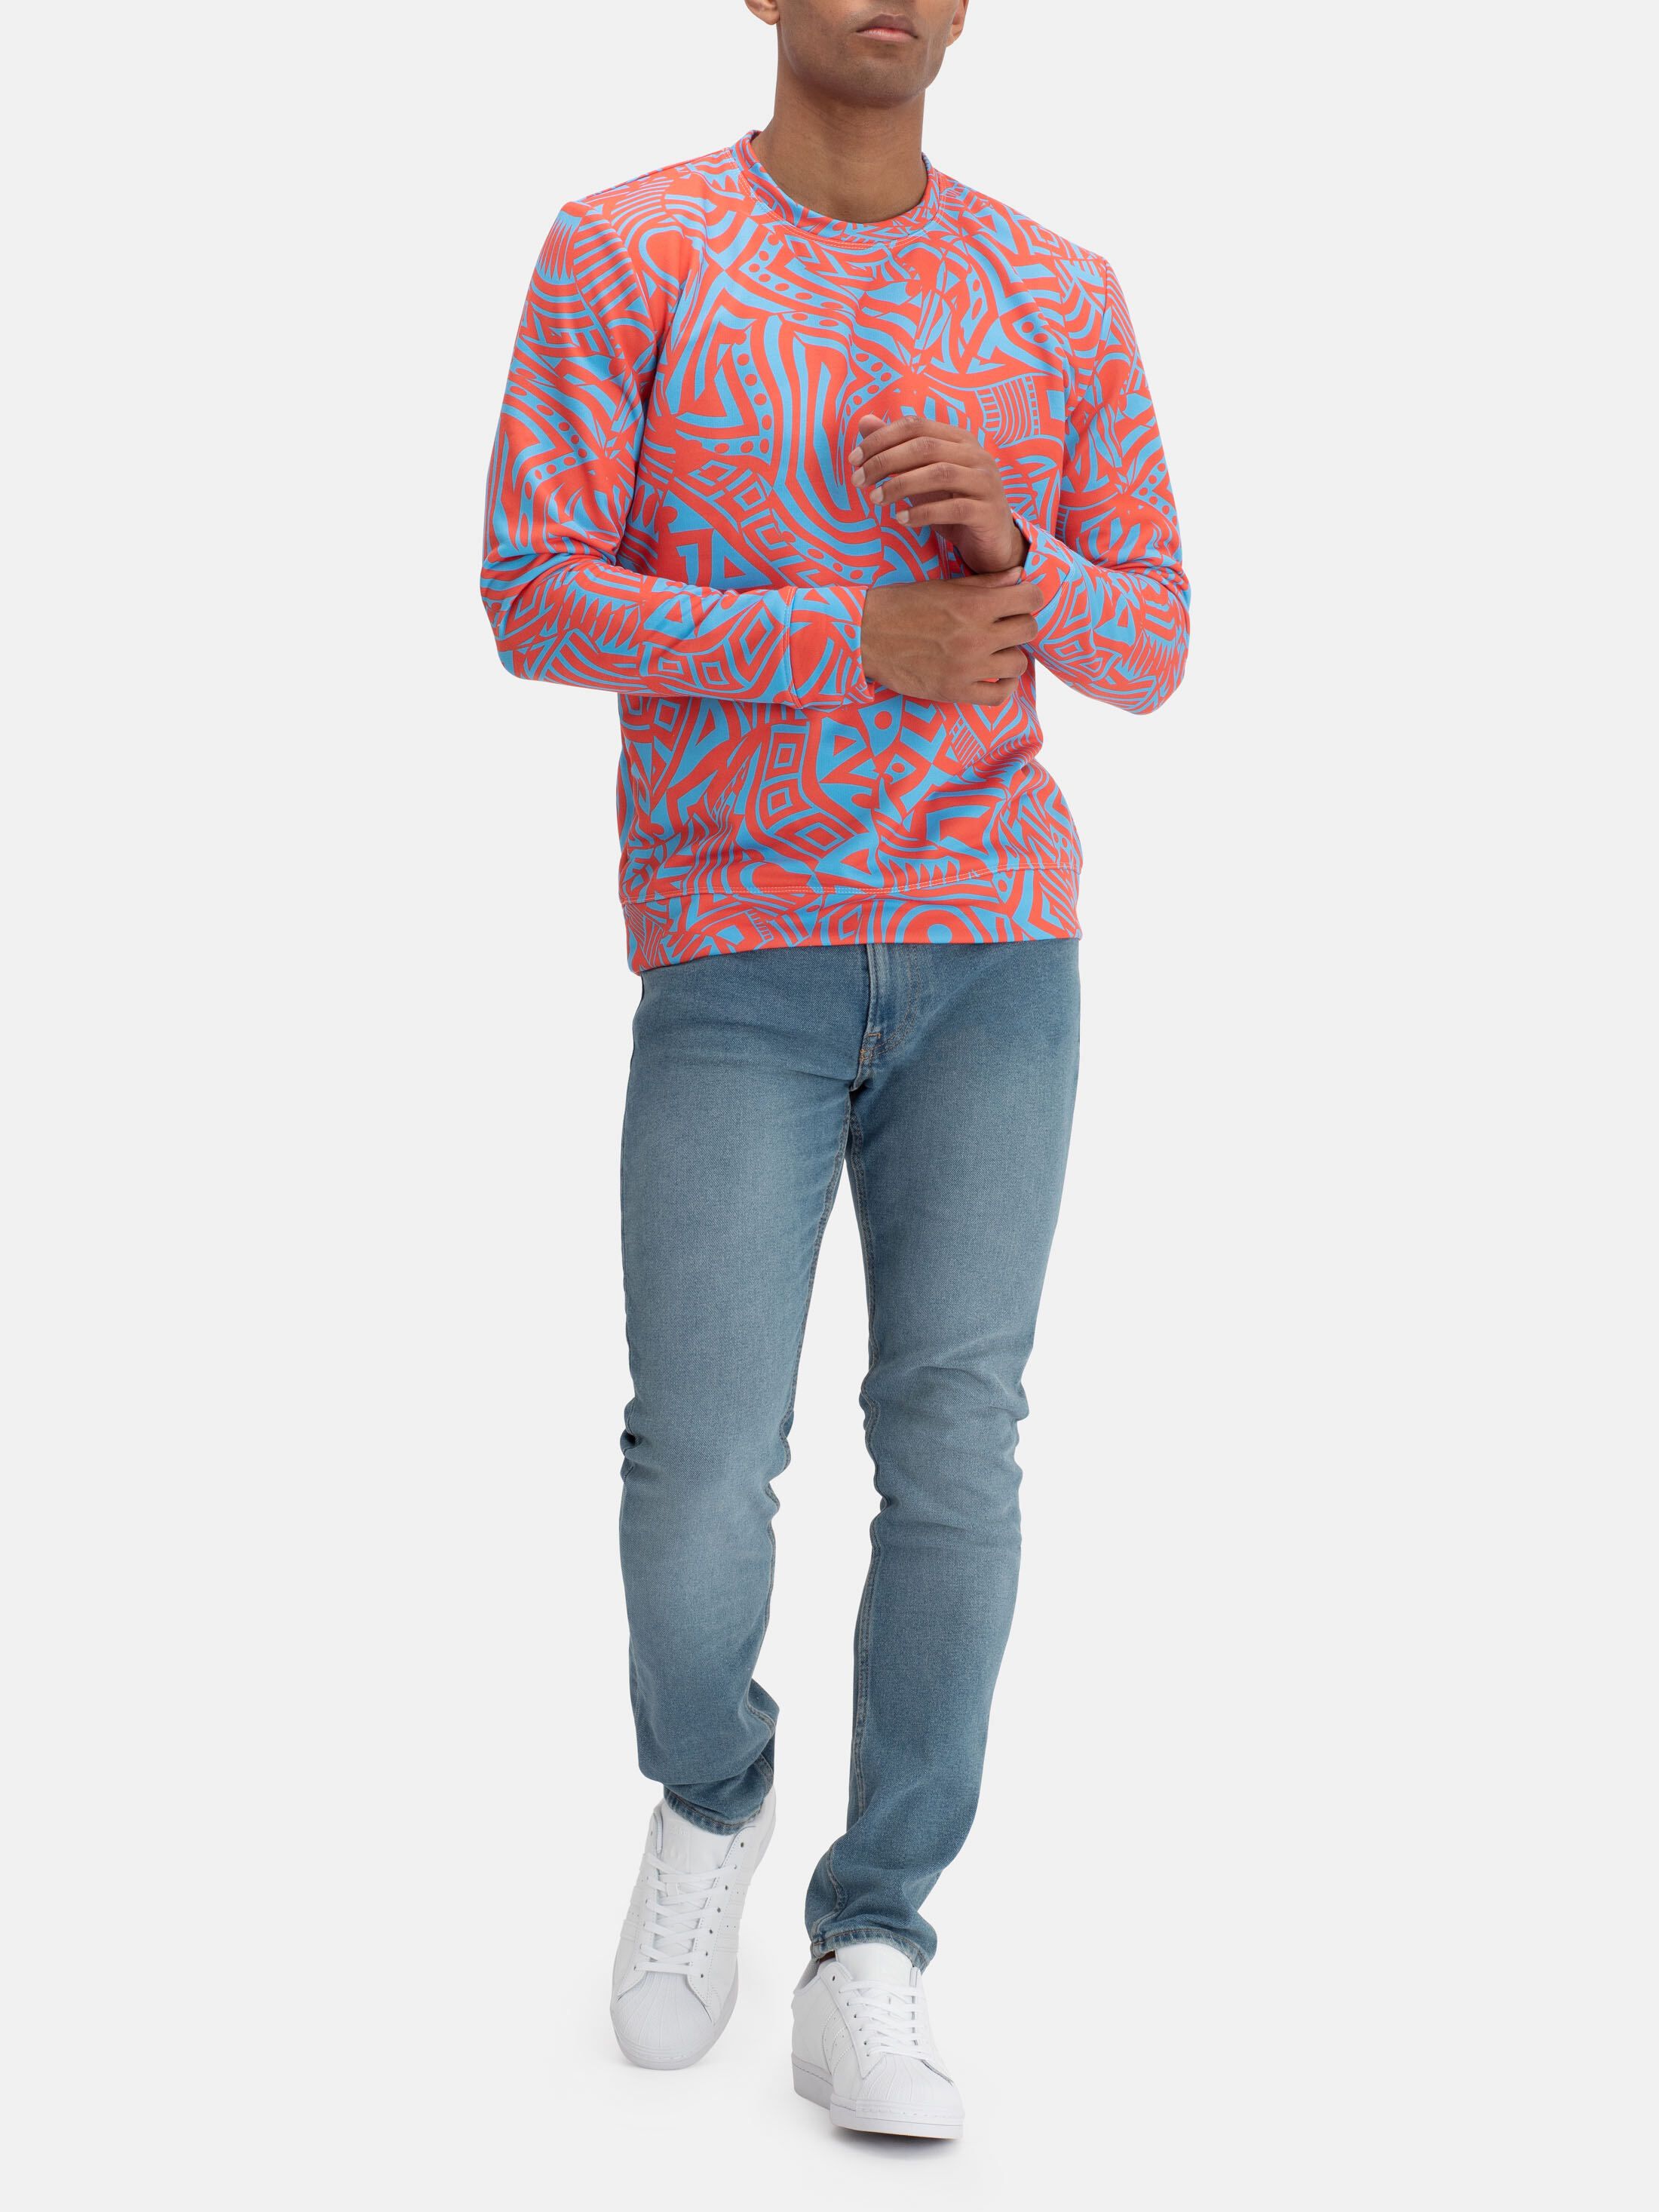 Custom Sweatshirts UK